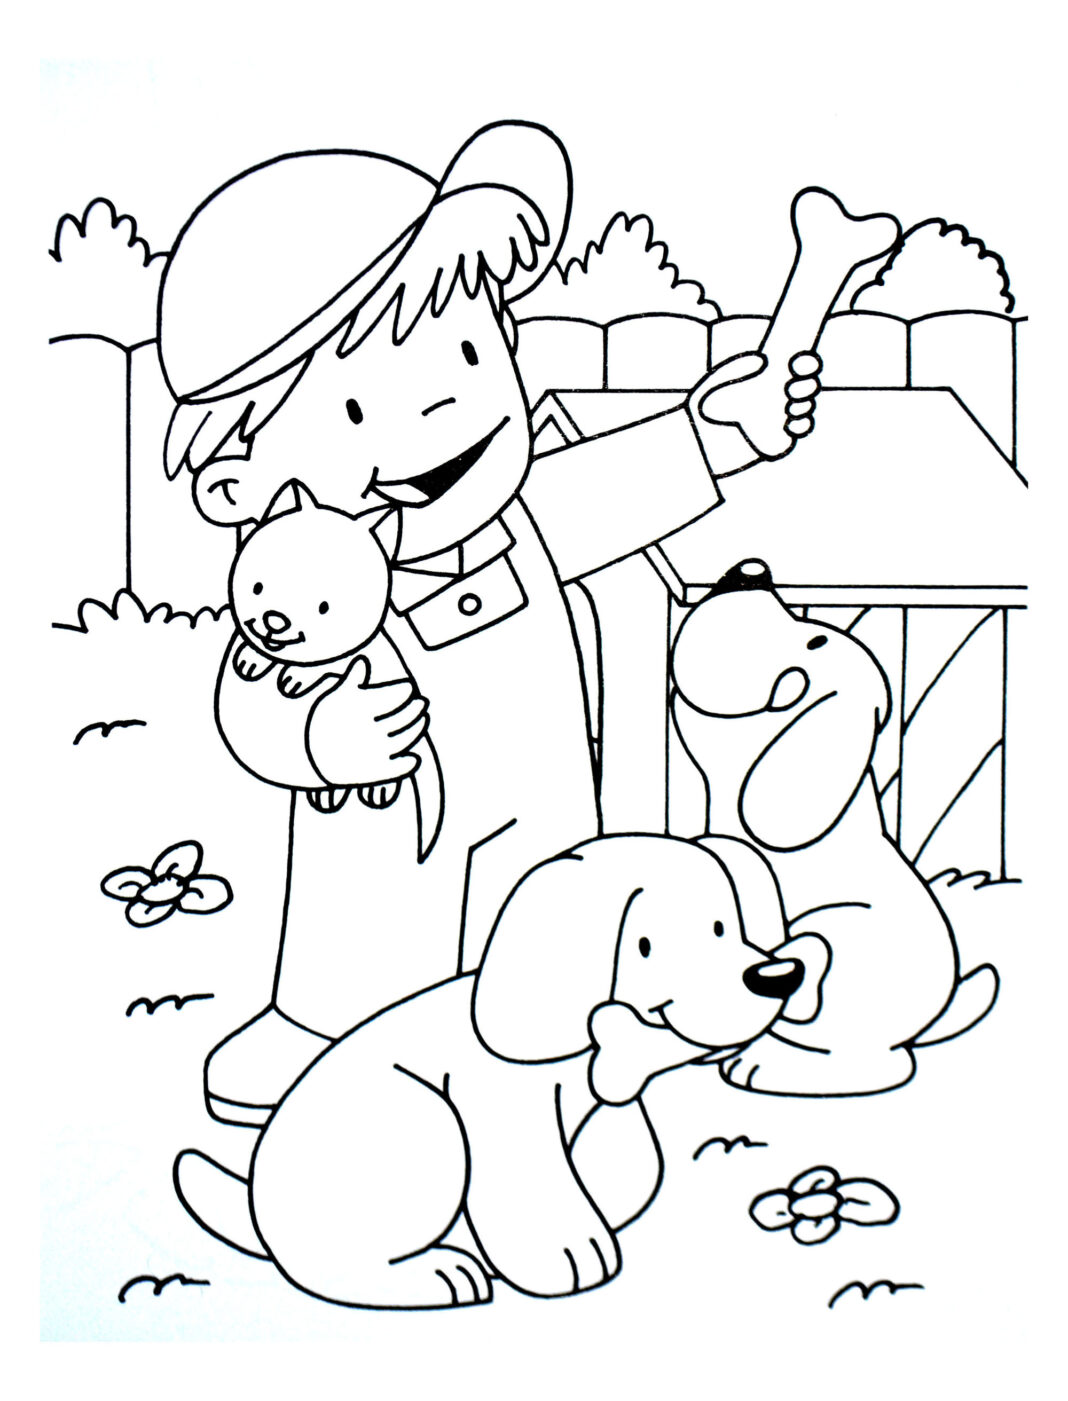 Livro colorido on-line de um menino e seus cães em uma fazenda